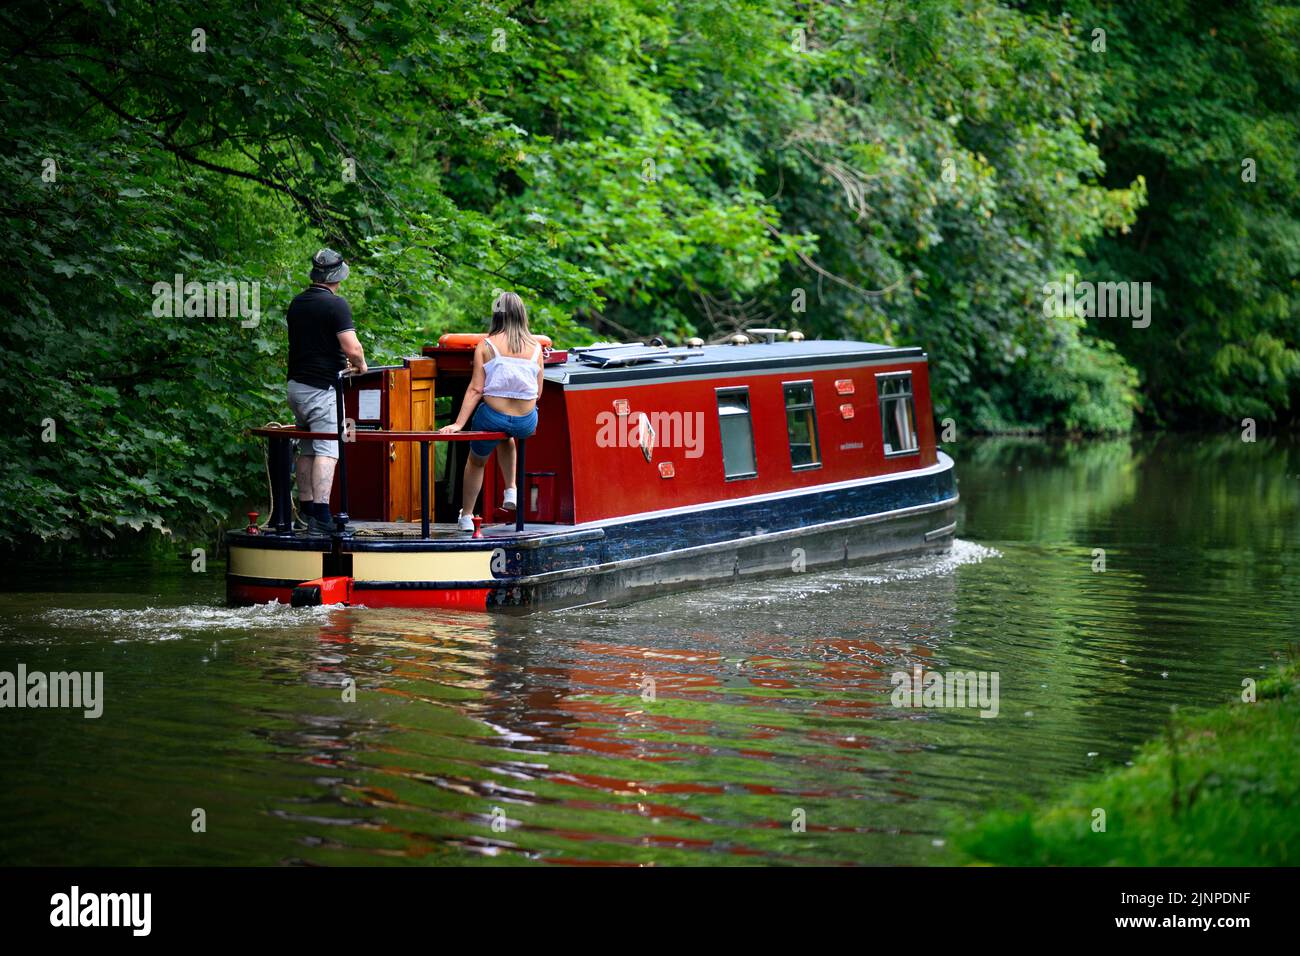 Paar entspannen sich auf einem schmalen Boot im roten Cruiser-Stil, das sich langsam entlang des malerischen, ruhigen ländlichen Leeds Liverpool Canal - Bingley, West Yorkshire, England, Großbritannien, bewegt. Stockfoto